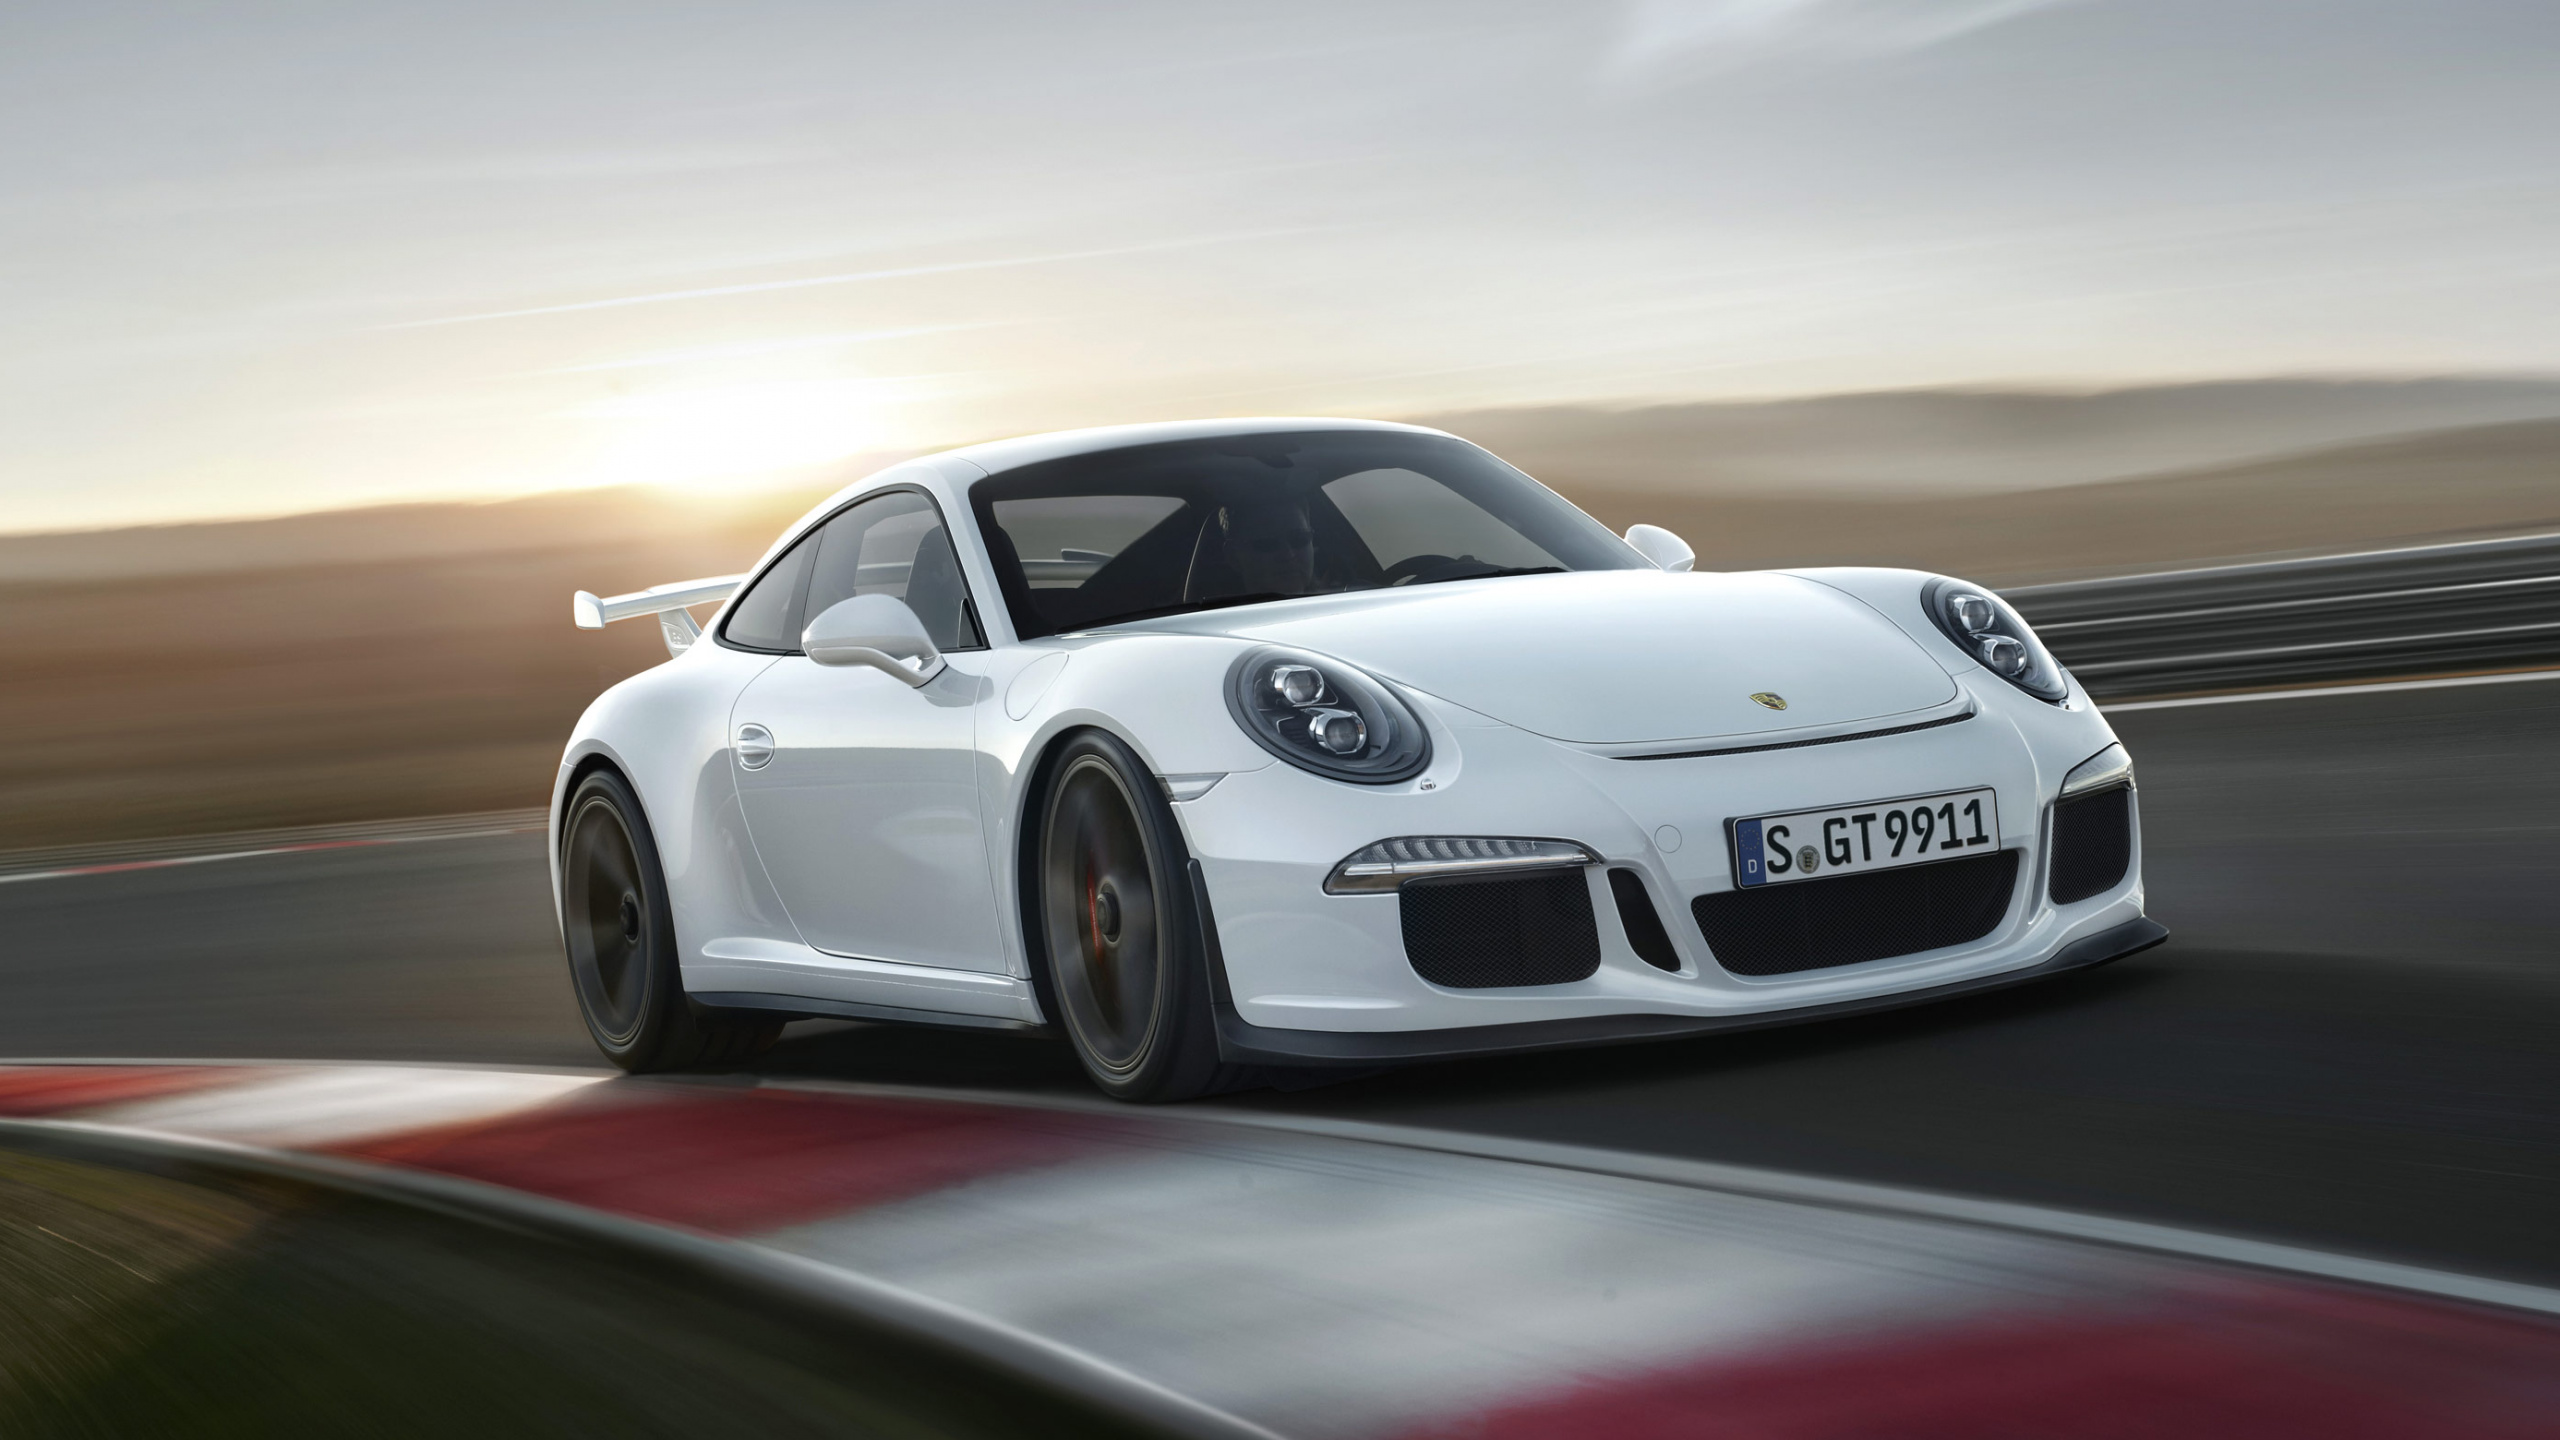 White Porsche 911 on Road. Wallpaper in 2560x1440 Resolution